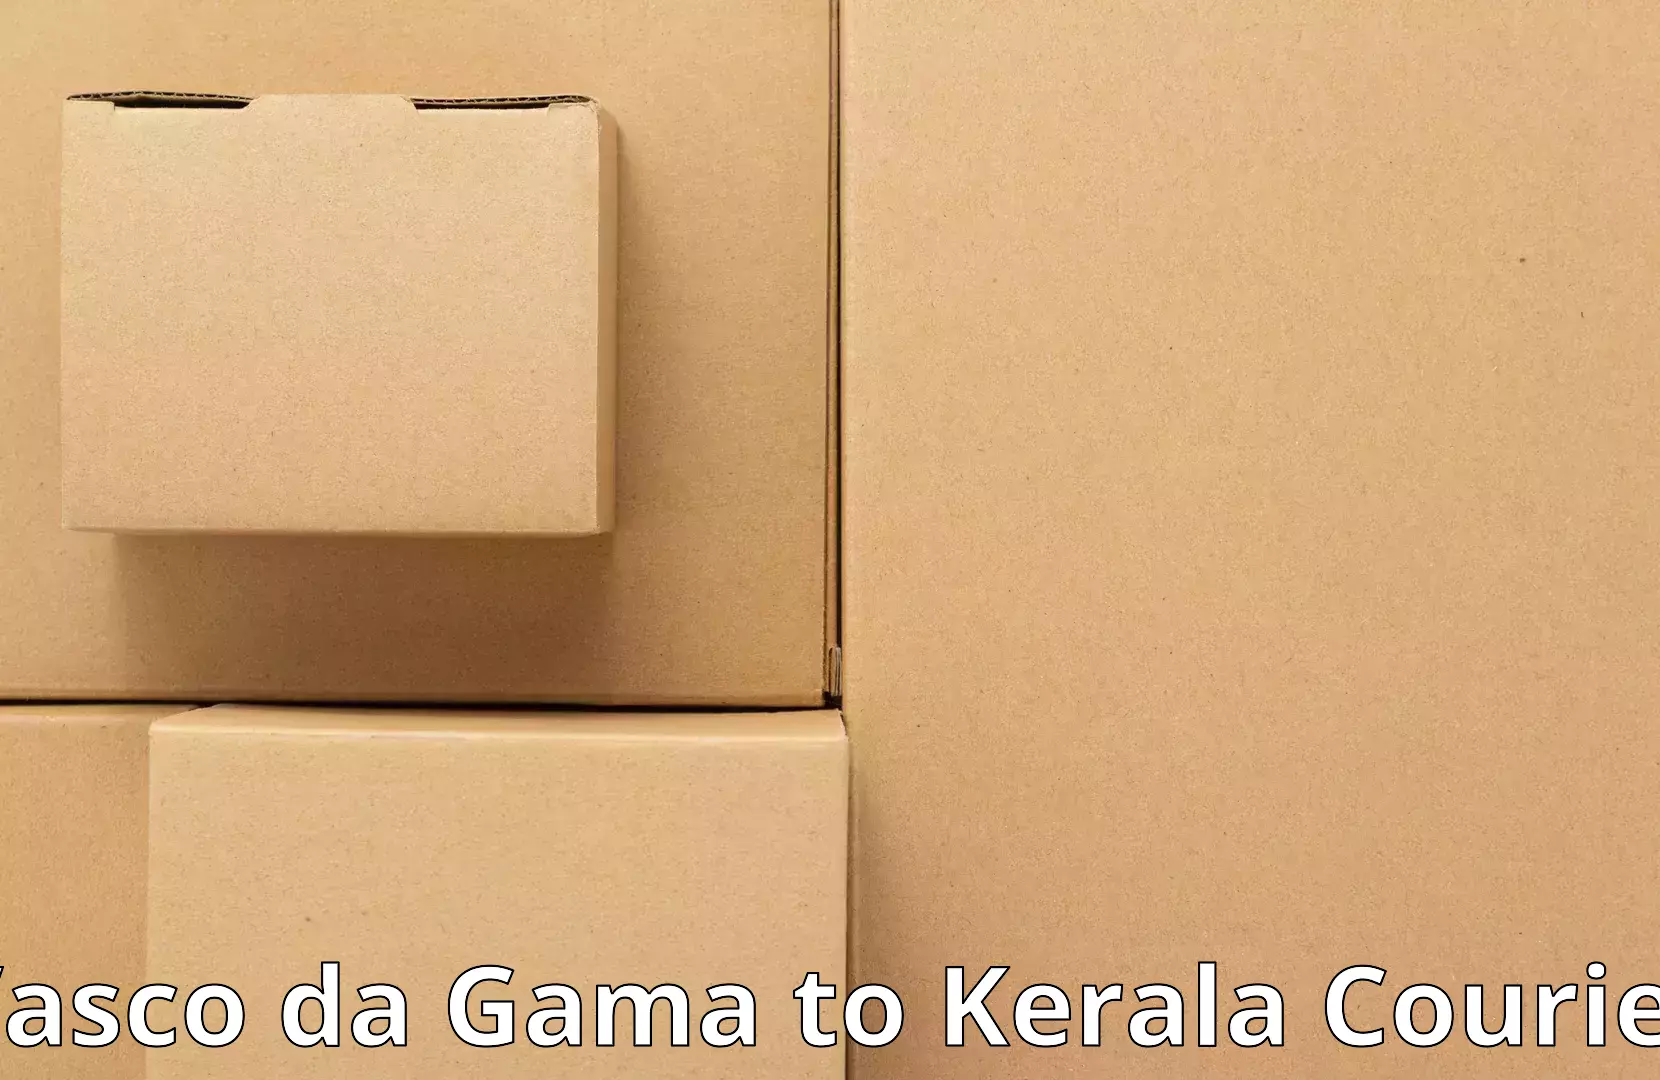 Comprehensive goods transport in Vasco da Gama to Kerala